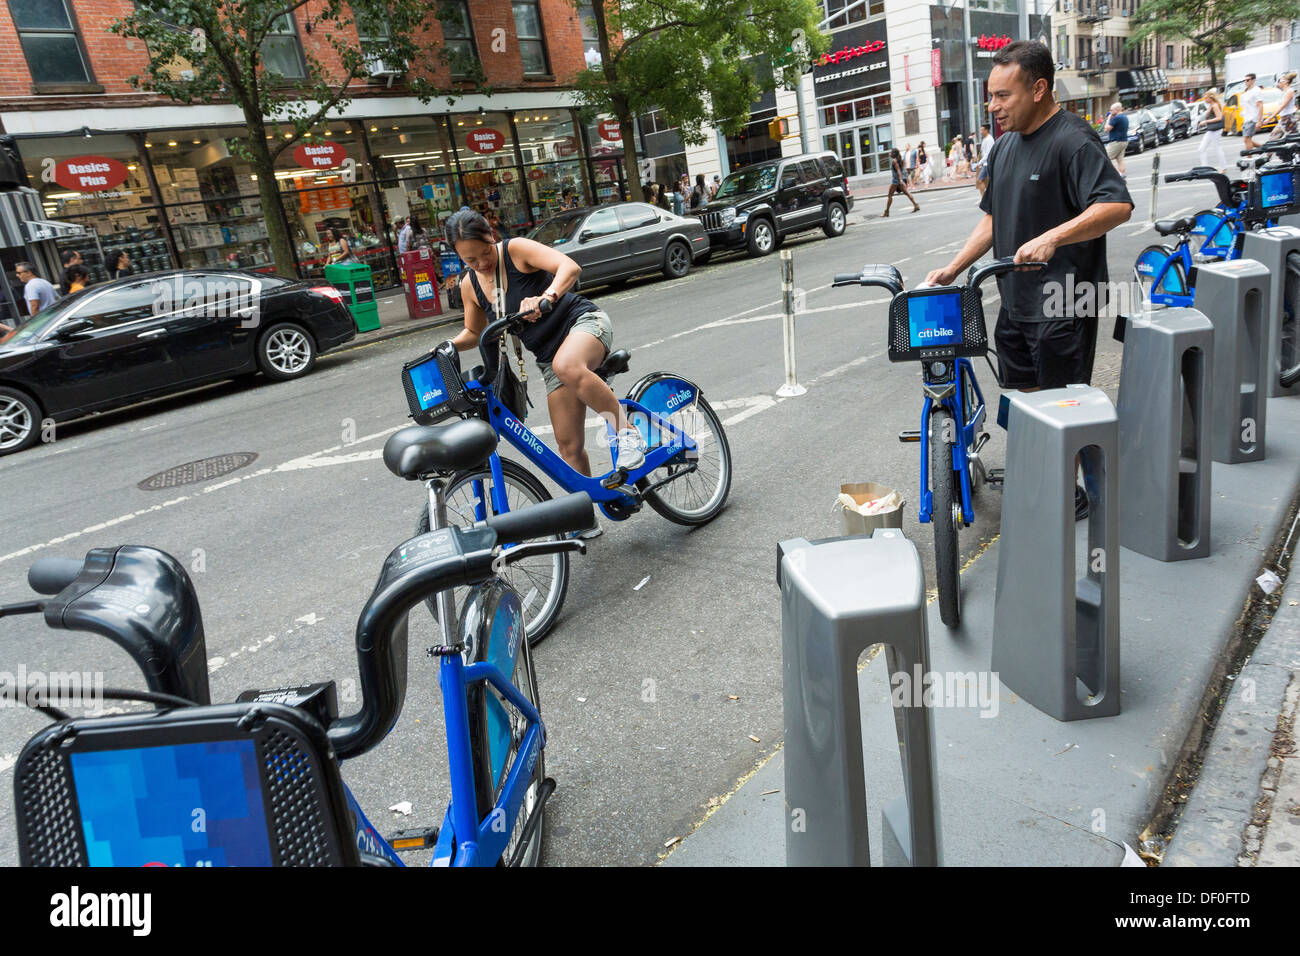 Femme assise sur un vélo Citi, système de partage de vélos publics à New York City Banque D'Images